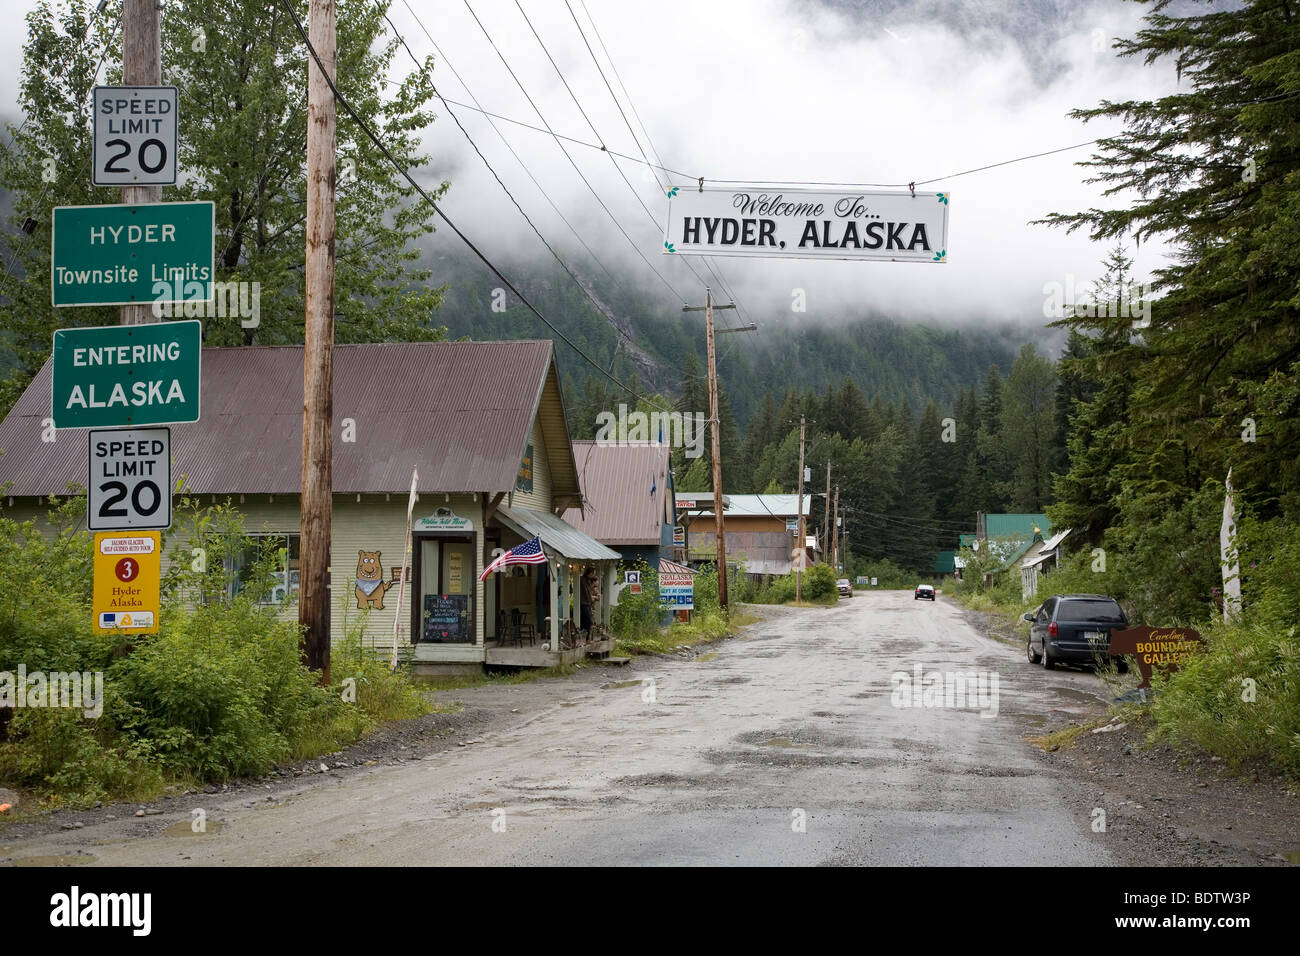 Das Ende der Zivilisation / The end of civilisation / Hyder - Alaska Stock Photo